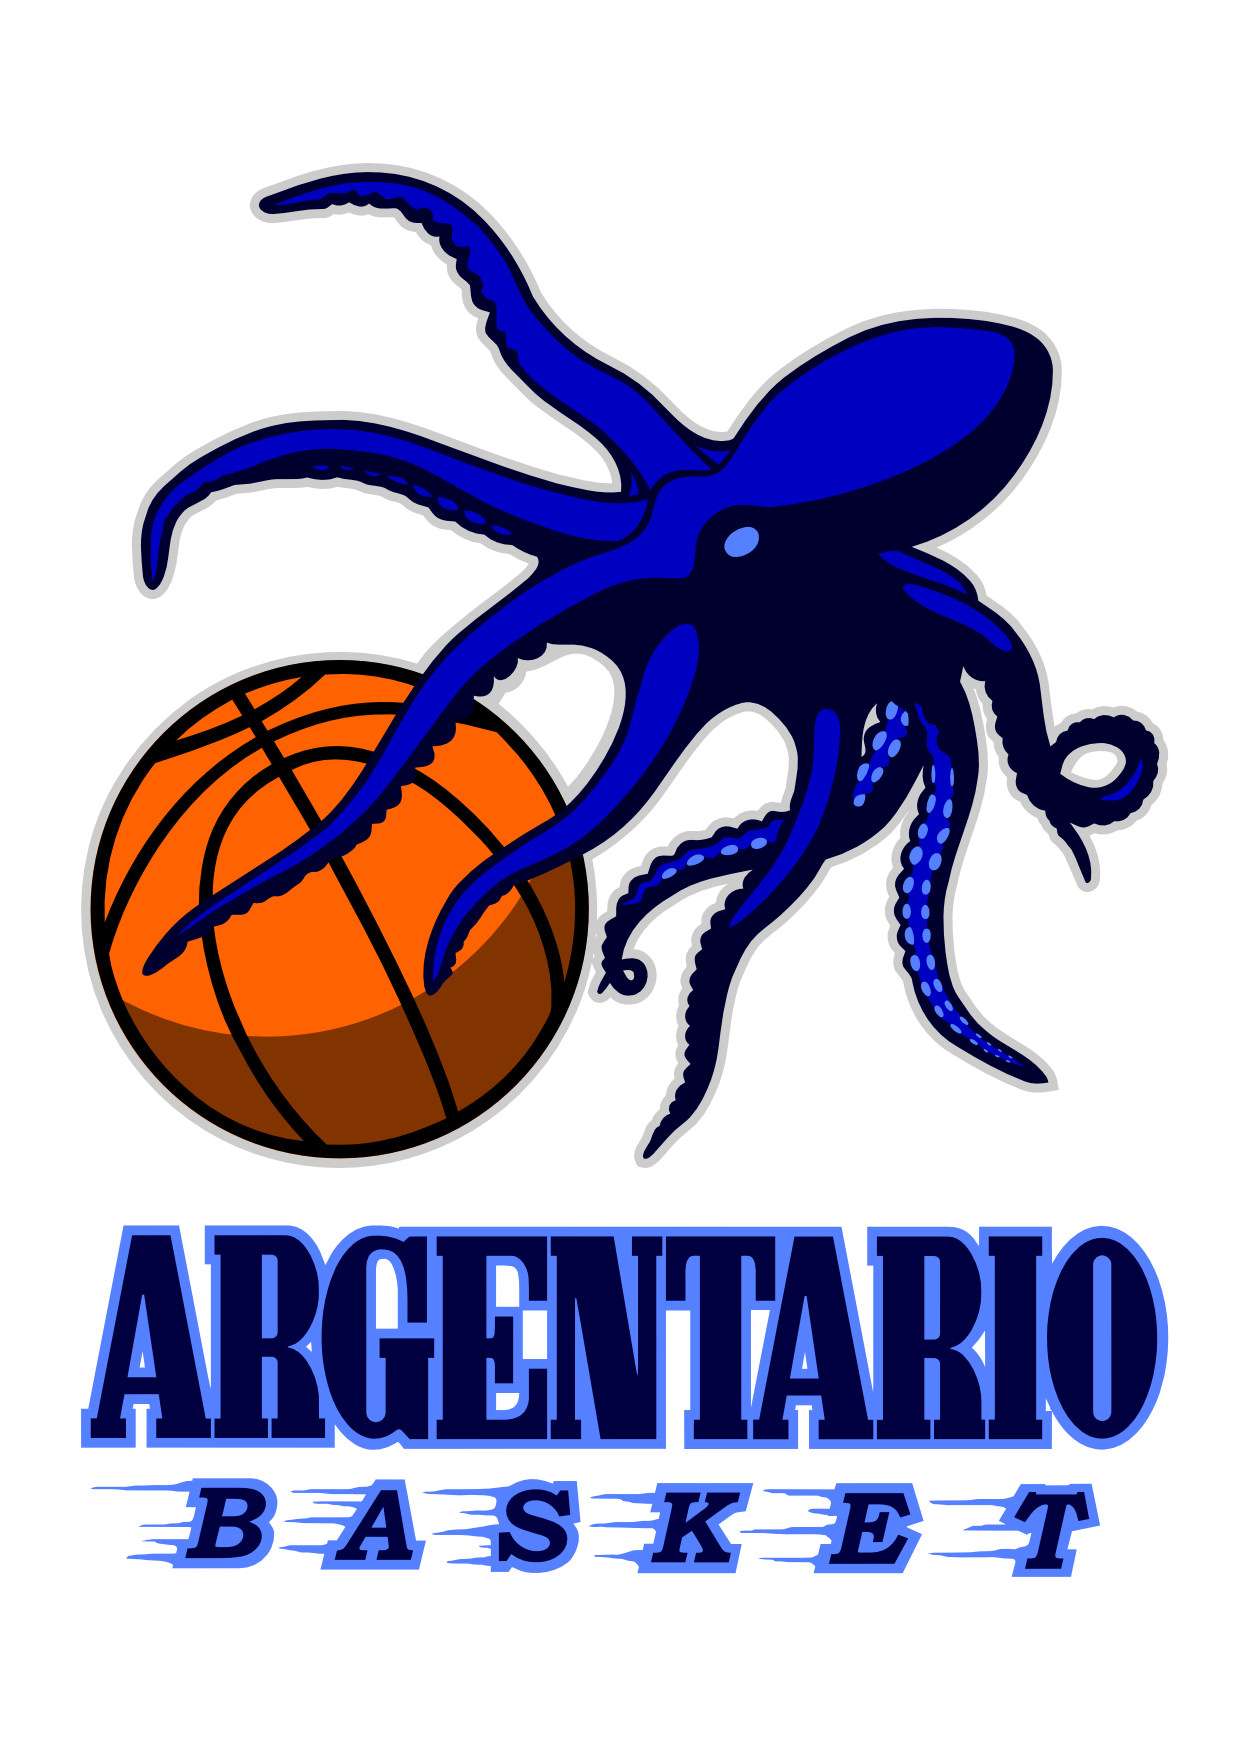 argentariobasket0